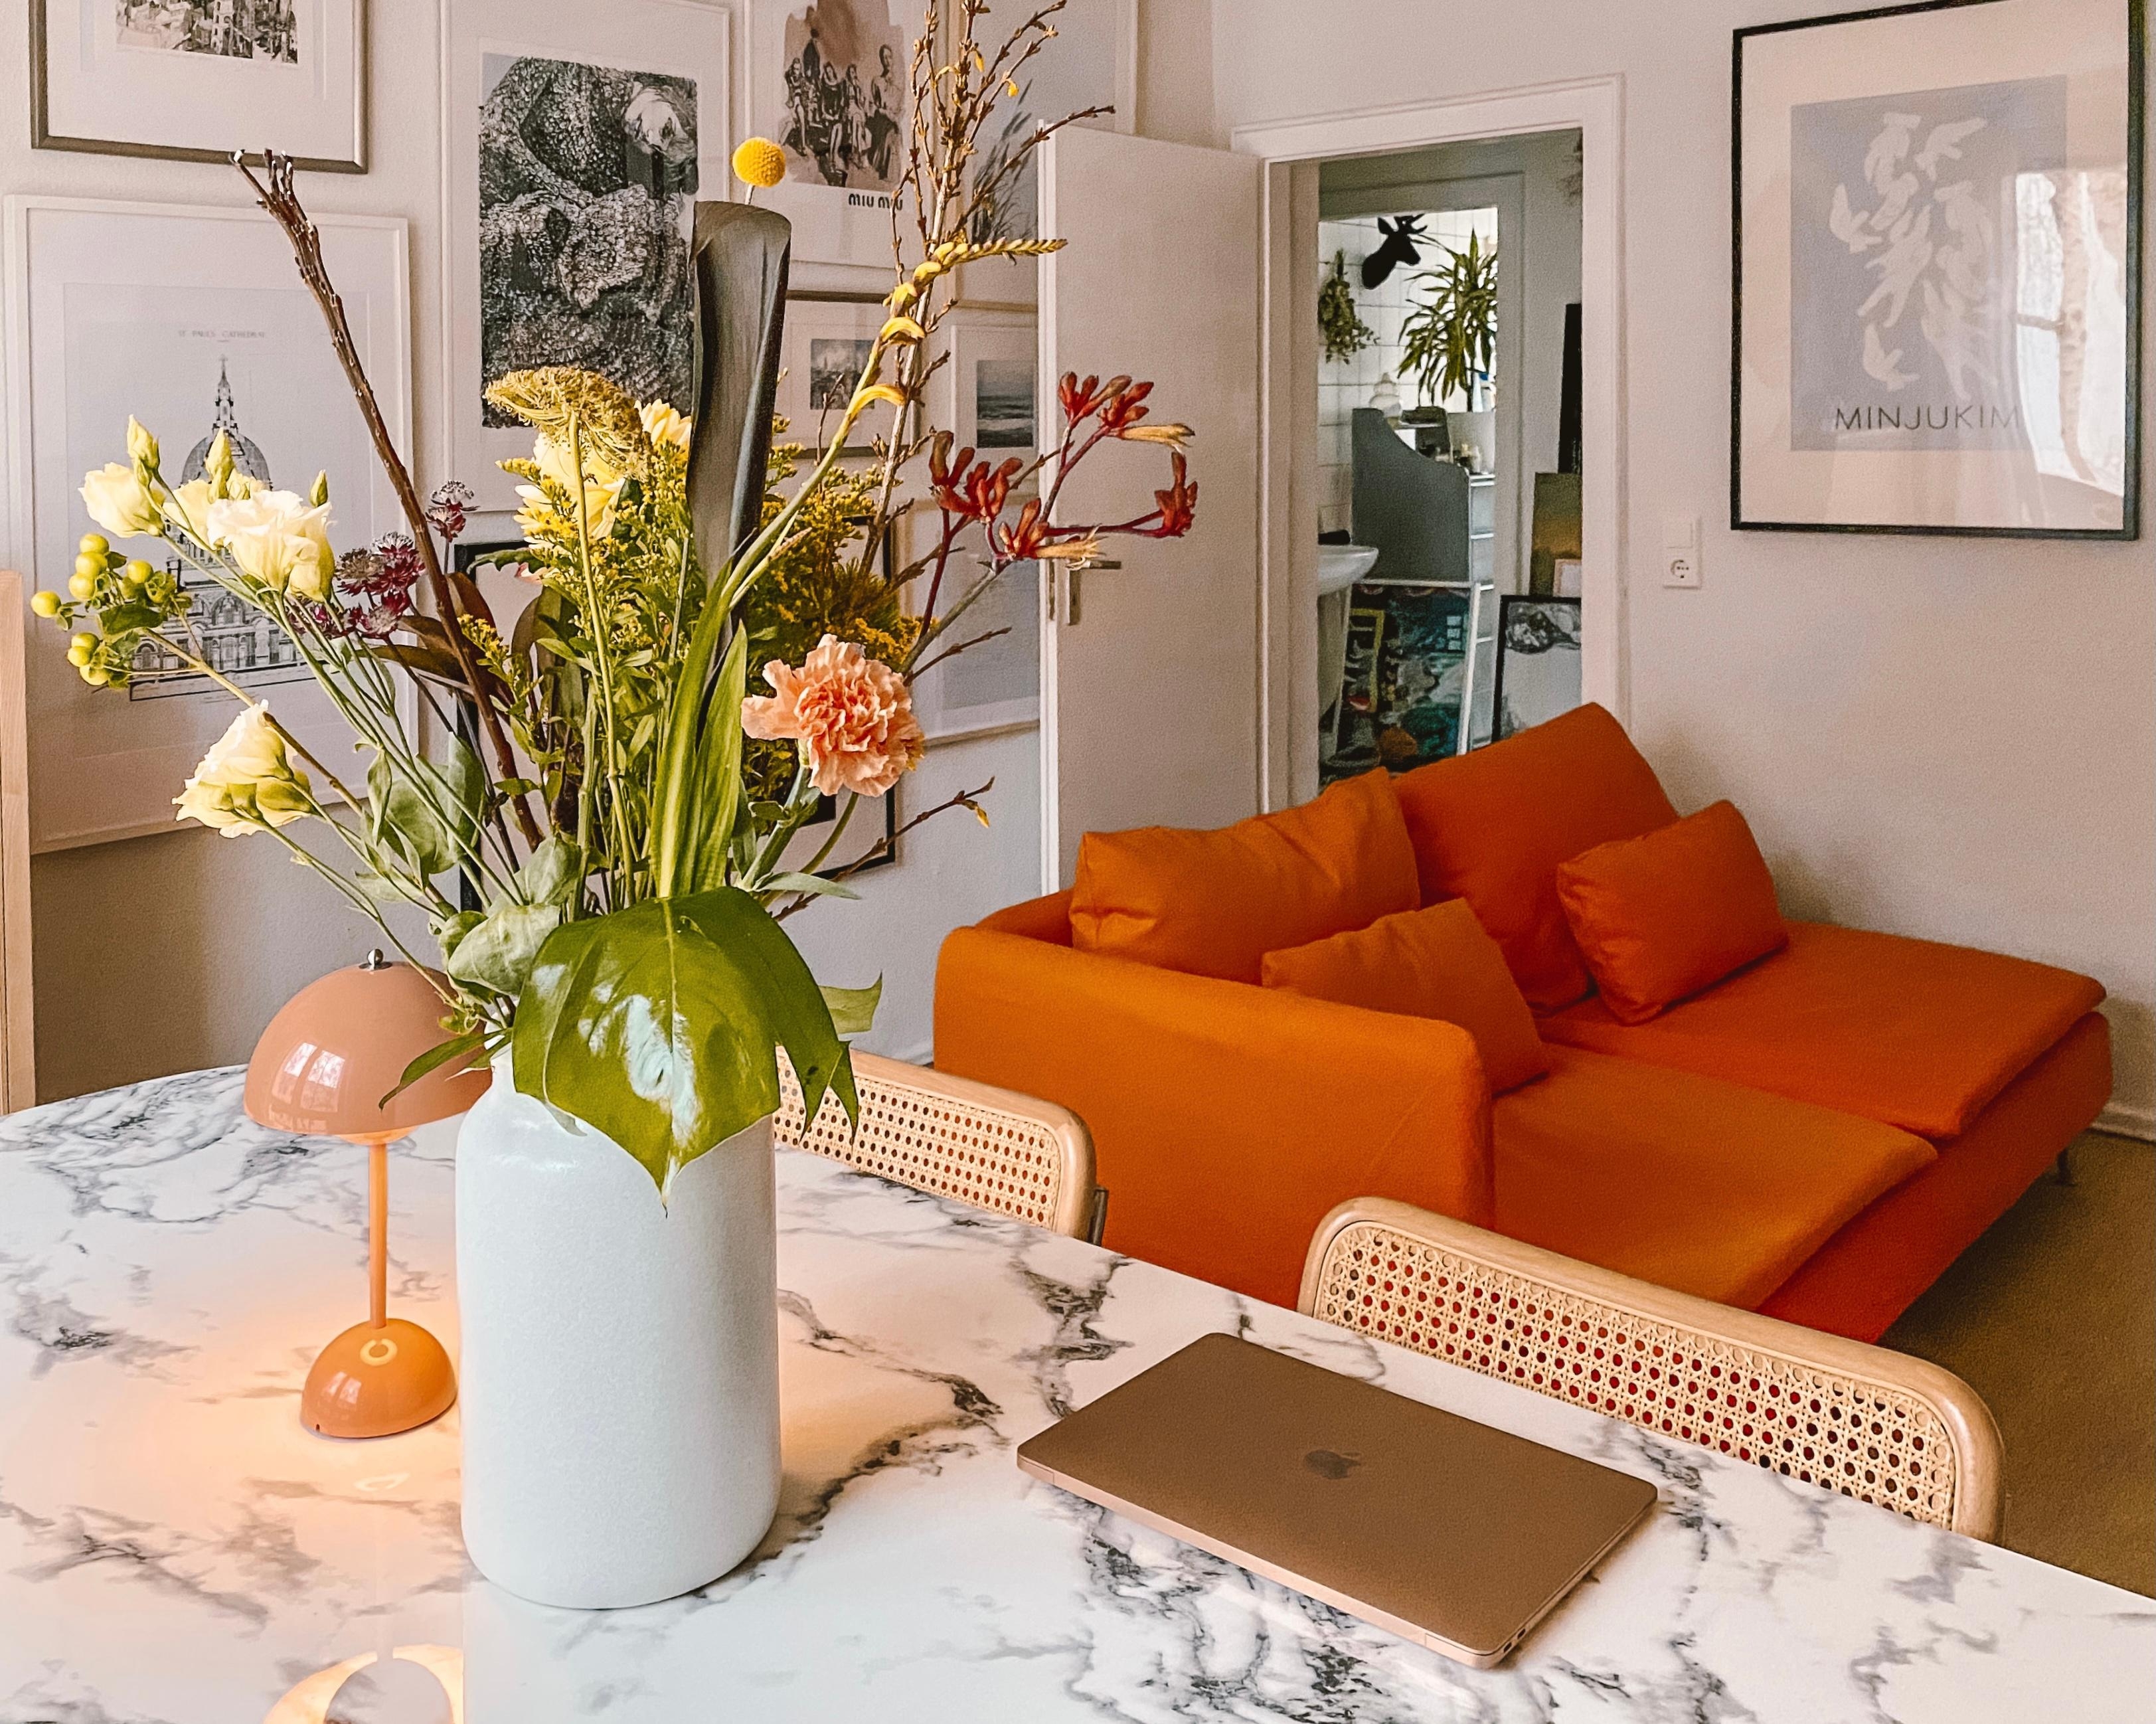 Seit einiger Zeit besessen von Orange, Terrakotta in Kombination mit Rosa und Flieder. #farbe #art #berlin #orange